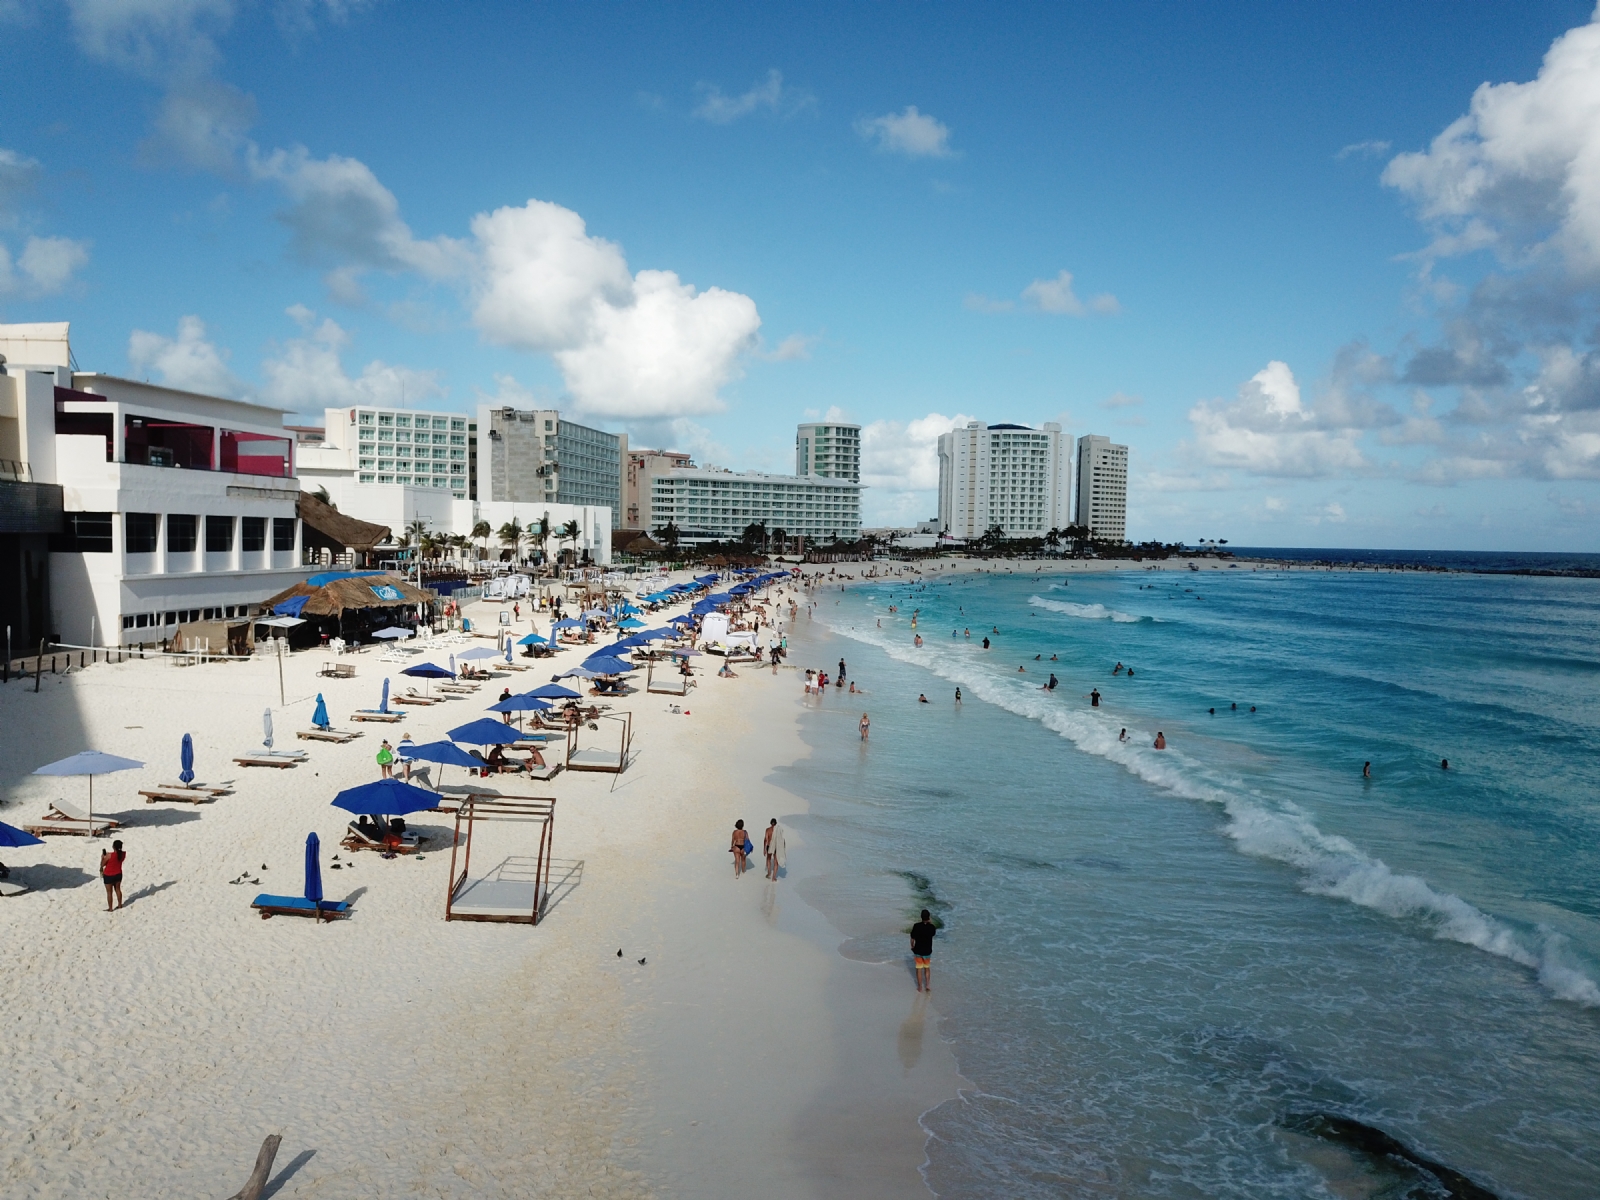 Las dunas costeras que hoy constituyen la Zona Hotelera de Cancún, fueron rellenadas para hacerlas más anchas, haciéndolas idóneas para la construcción de inmuebles